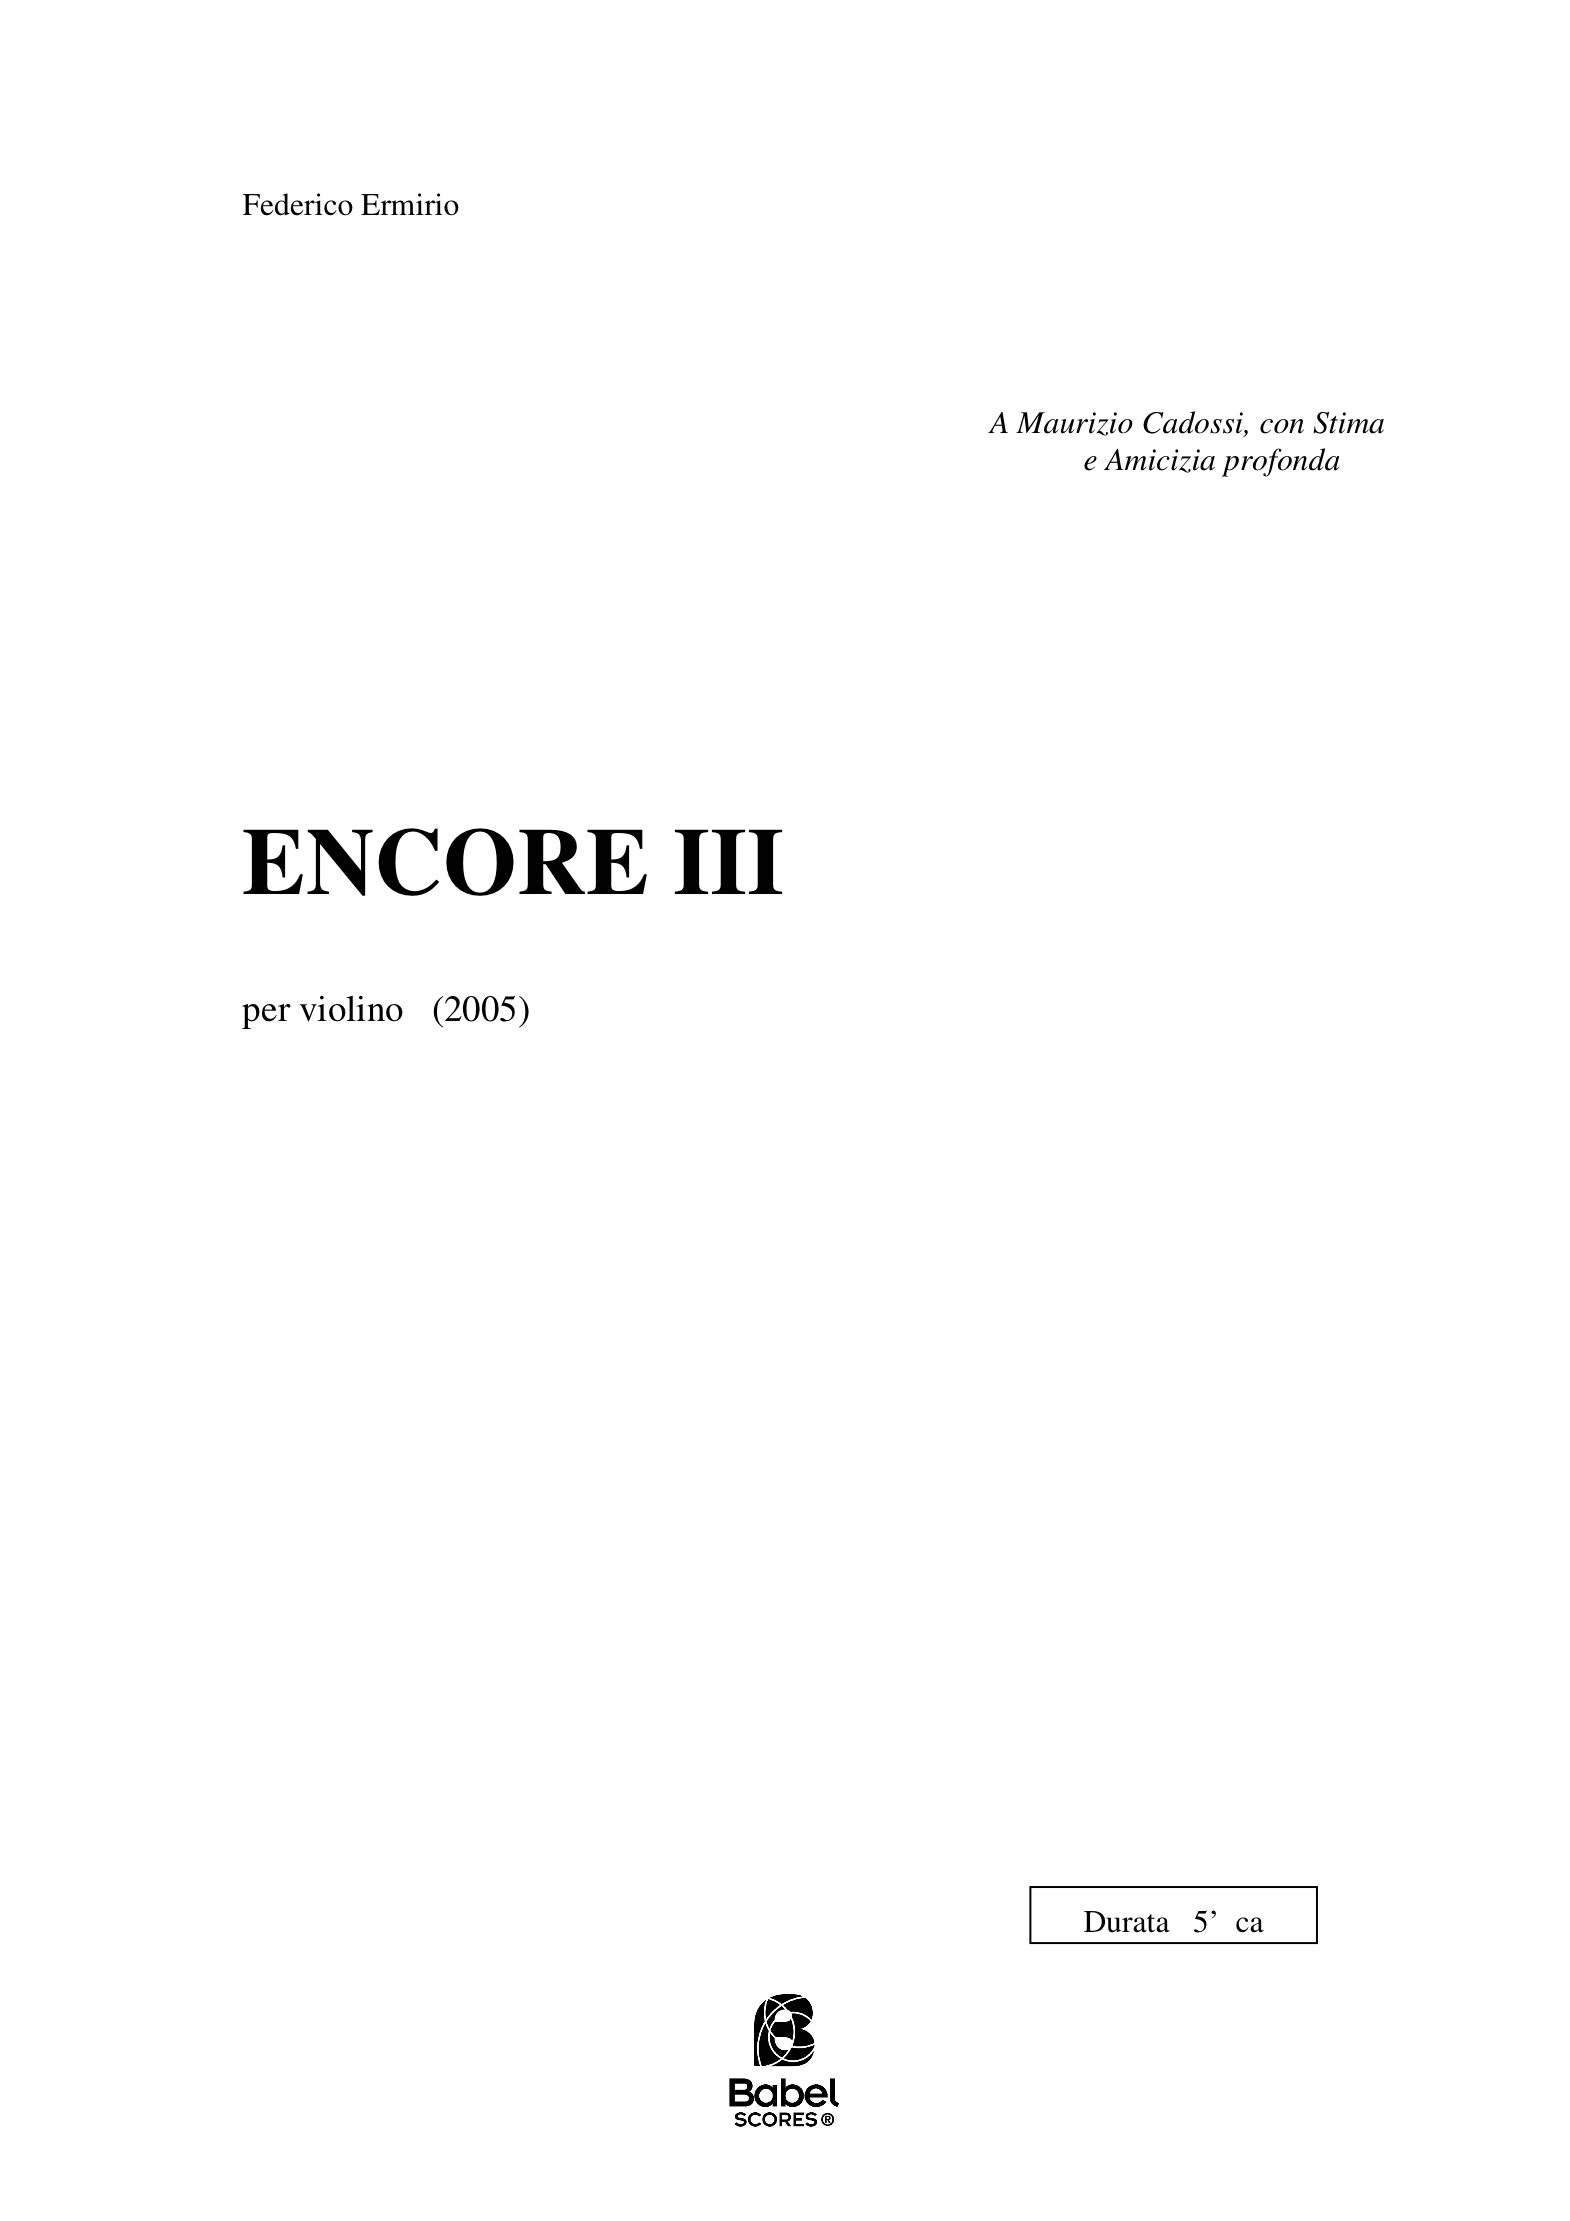 ENCORE III A4 z